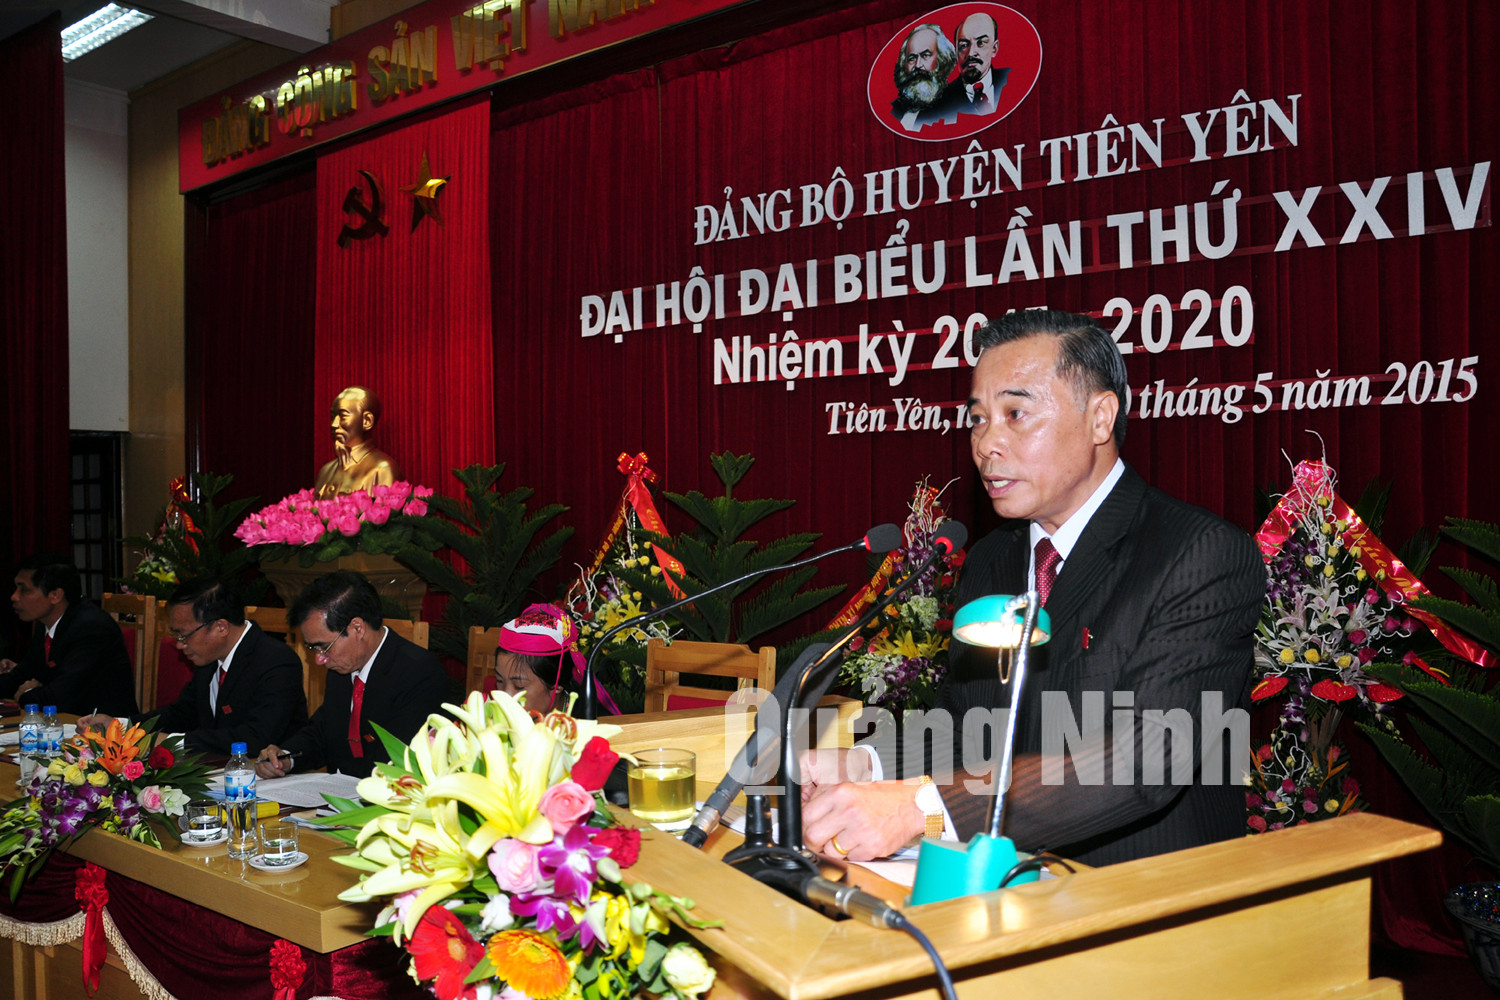 Đồng chí Phạm Văn Ty, Bí thư Huyện ủy khóa XXIII trình bày báo cáo chính trị tại đại hội